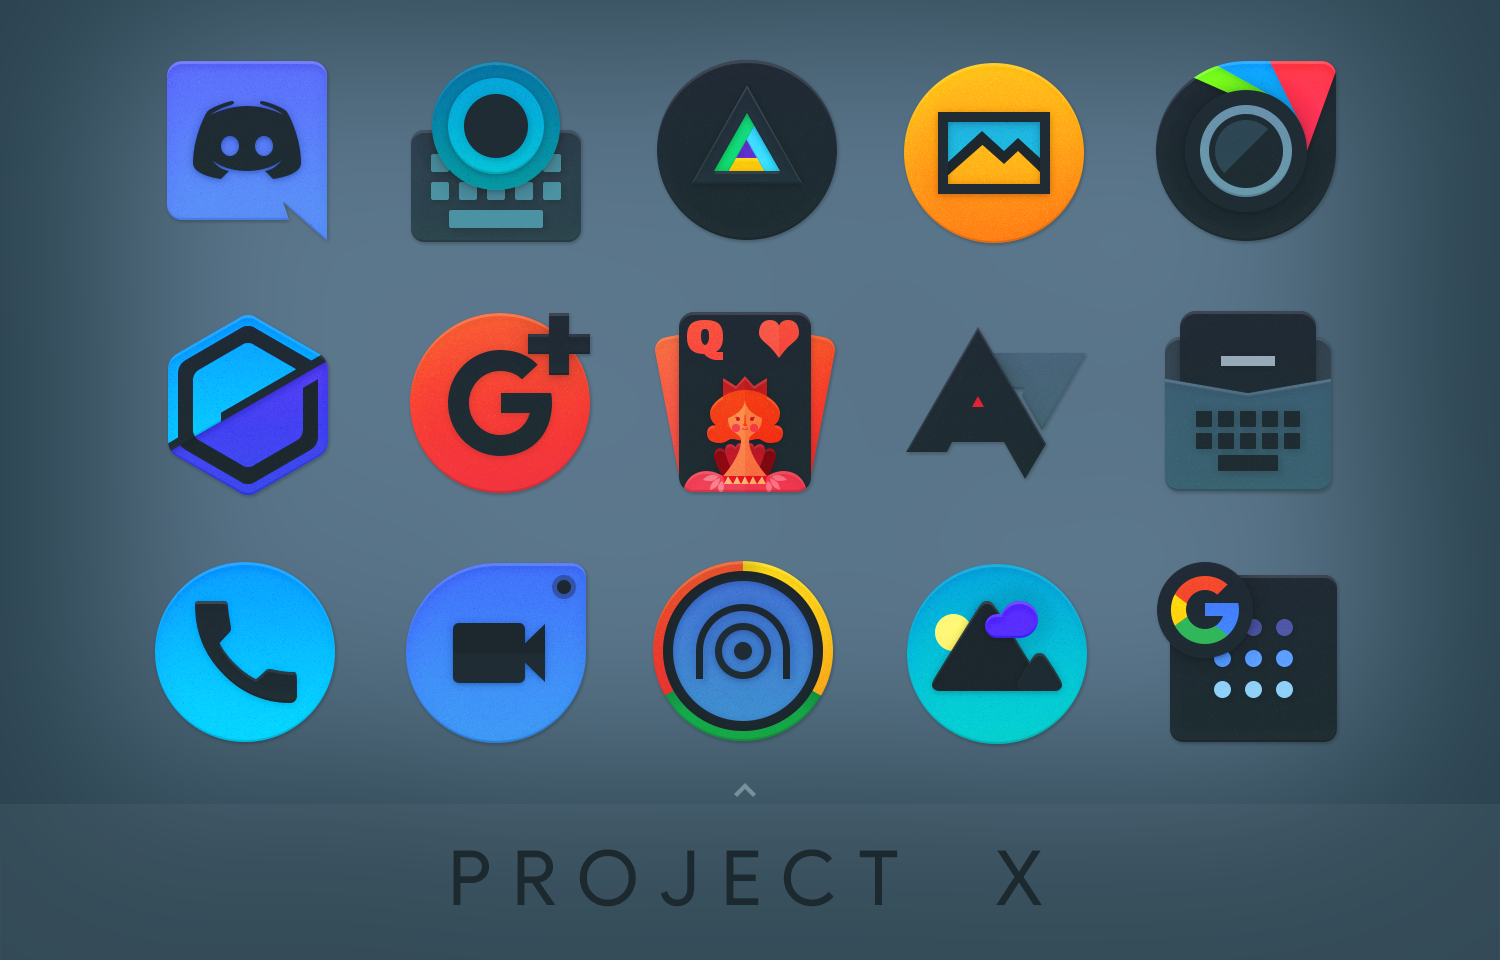 Icon pack studio pro. Иконки для приложений. Иконки для приложений инди КИД. Иконки приложений для андроид. Иконки для приложений Android.